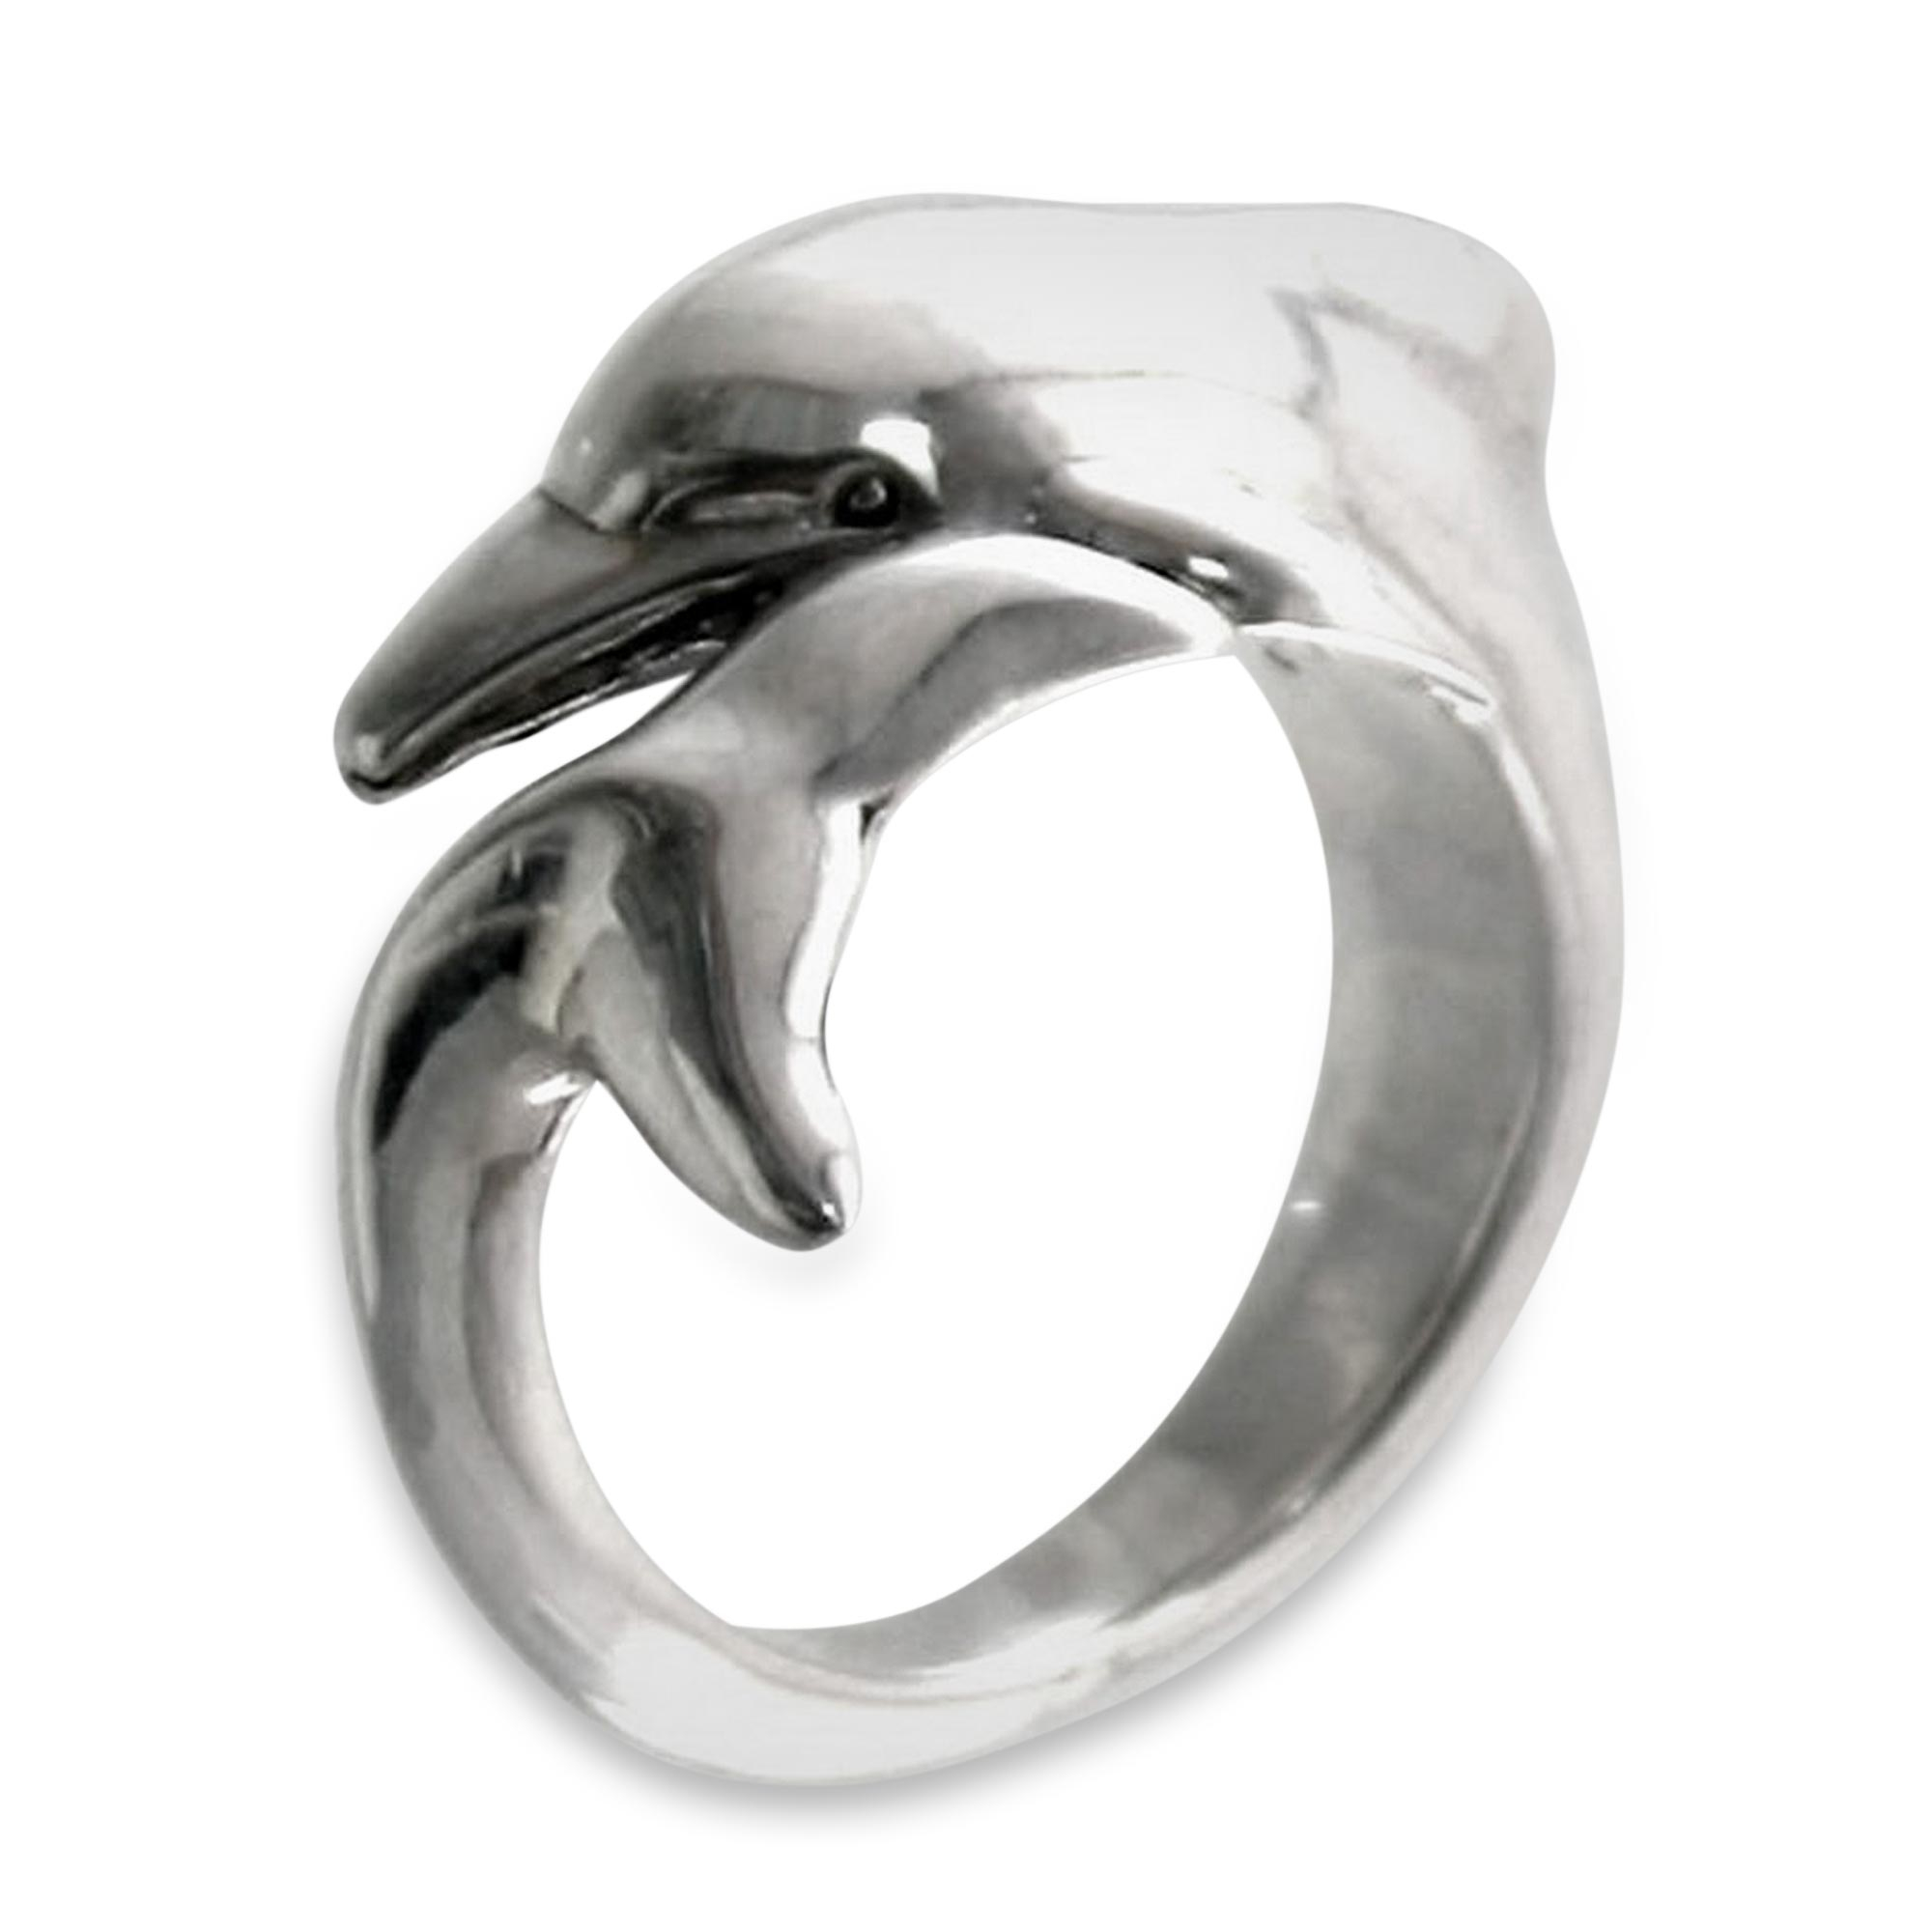 Кольцо с дельфинами